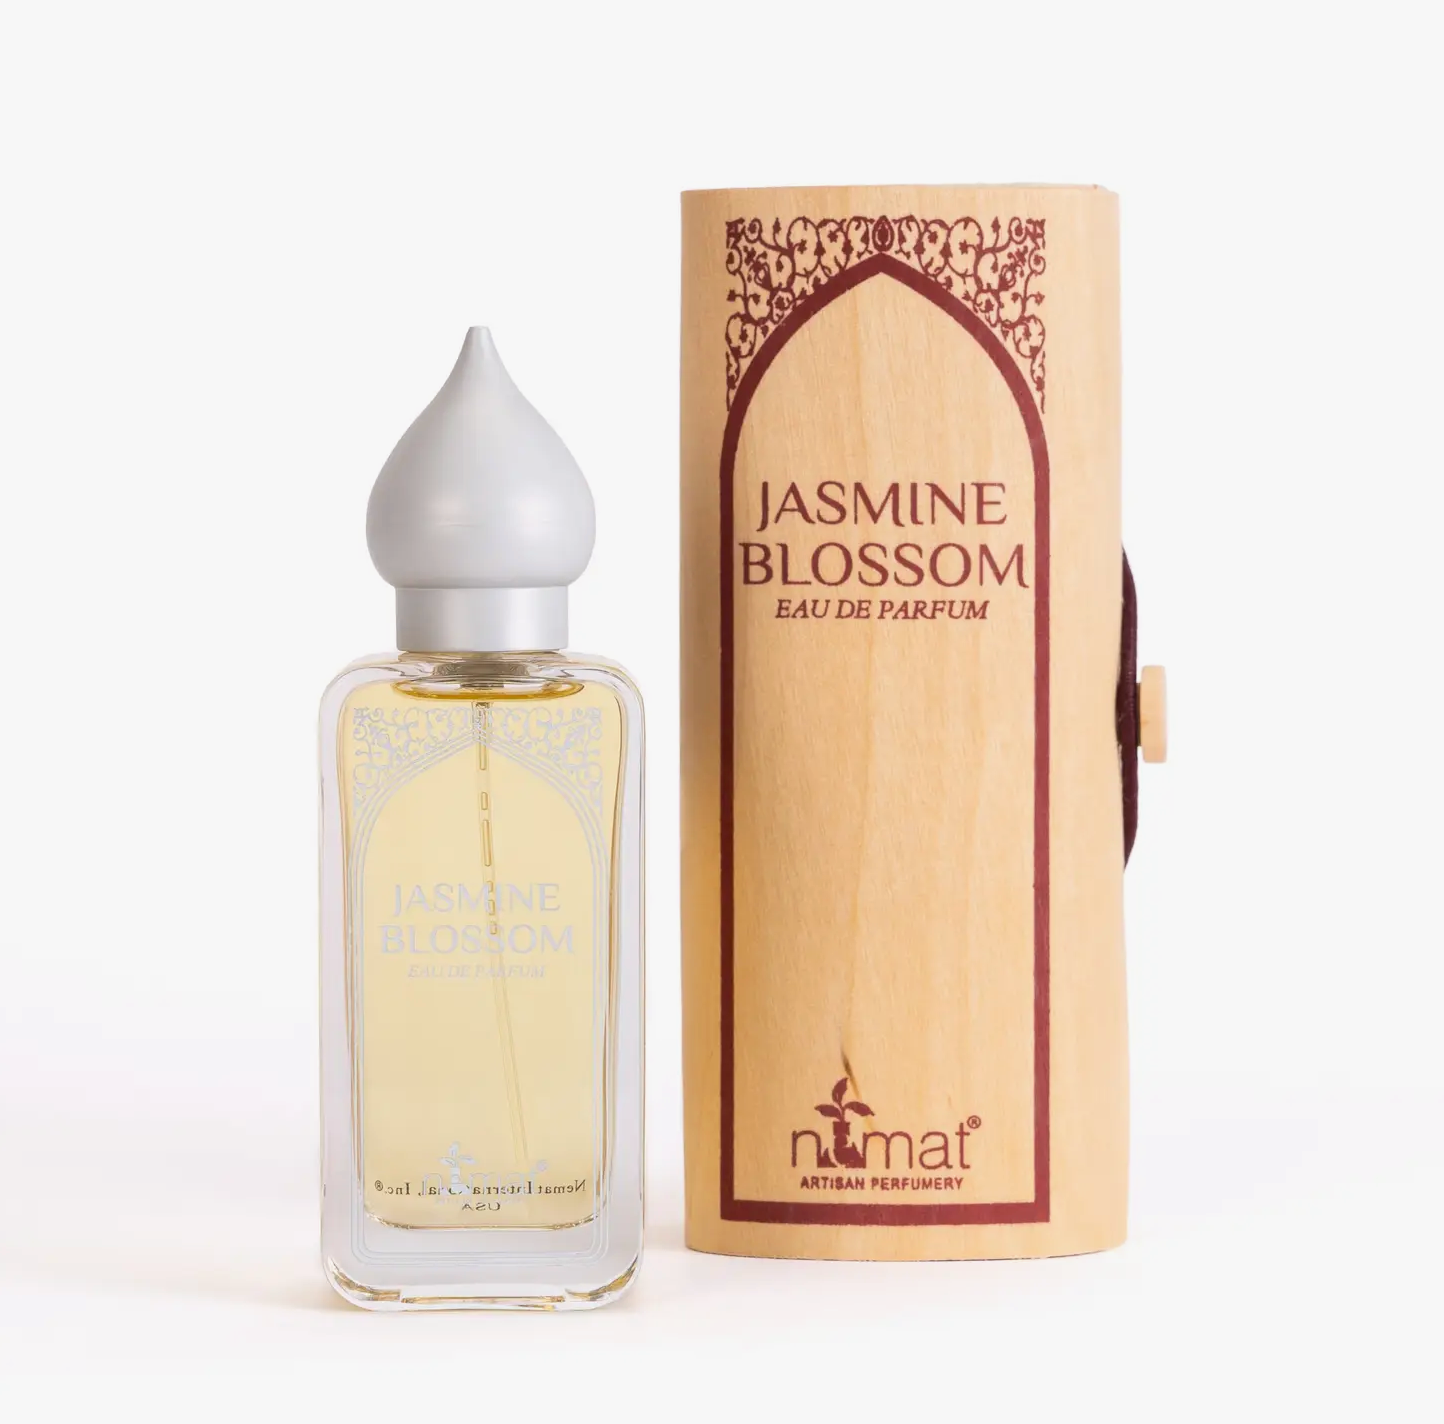 Jasmine Blossom Eau de Parfum